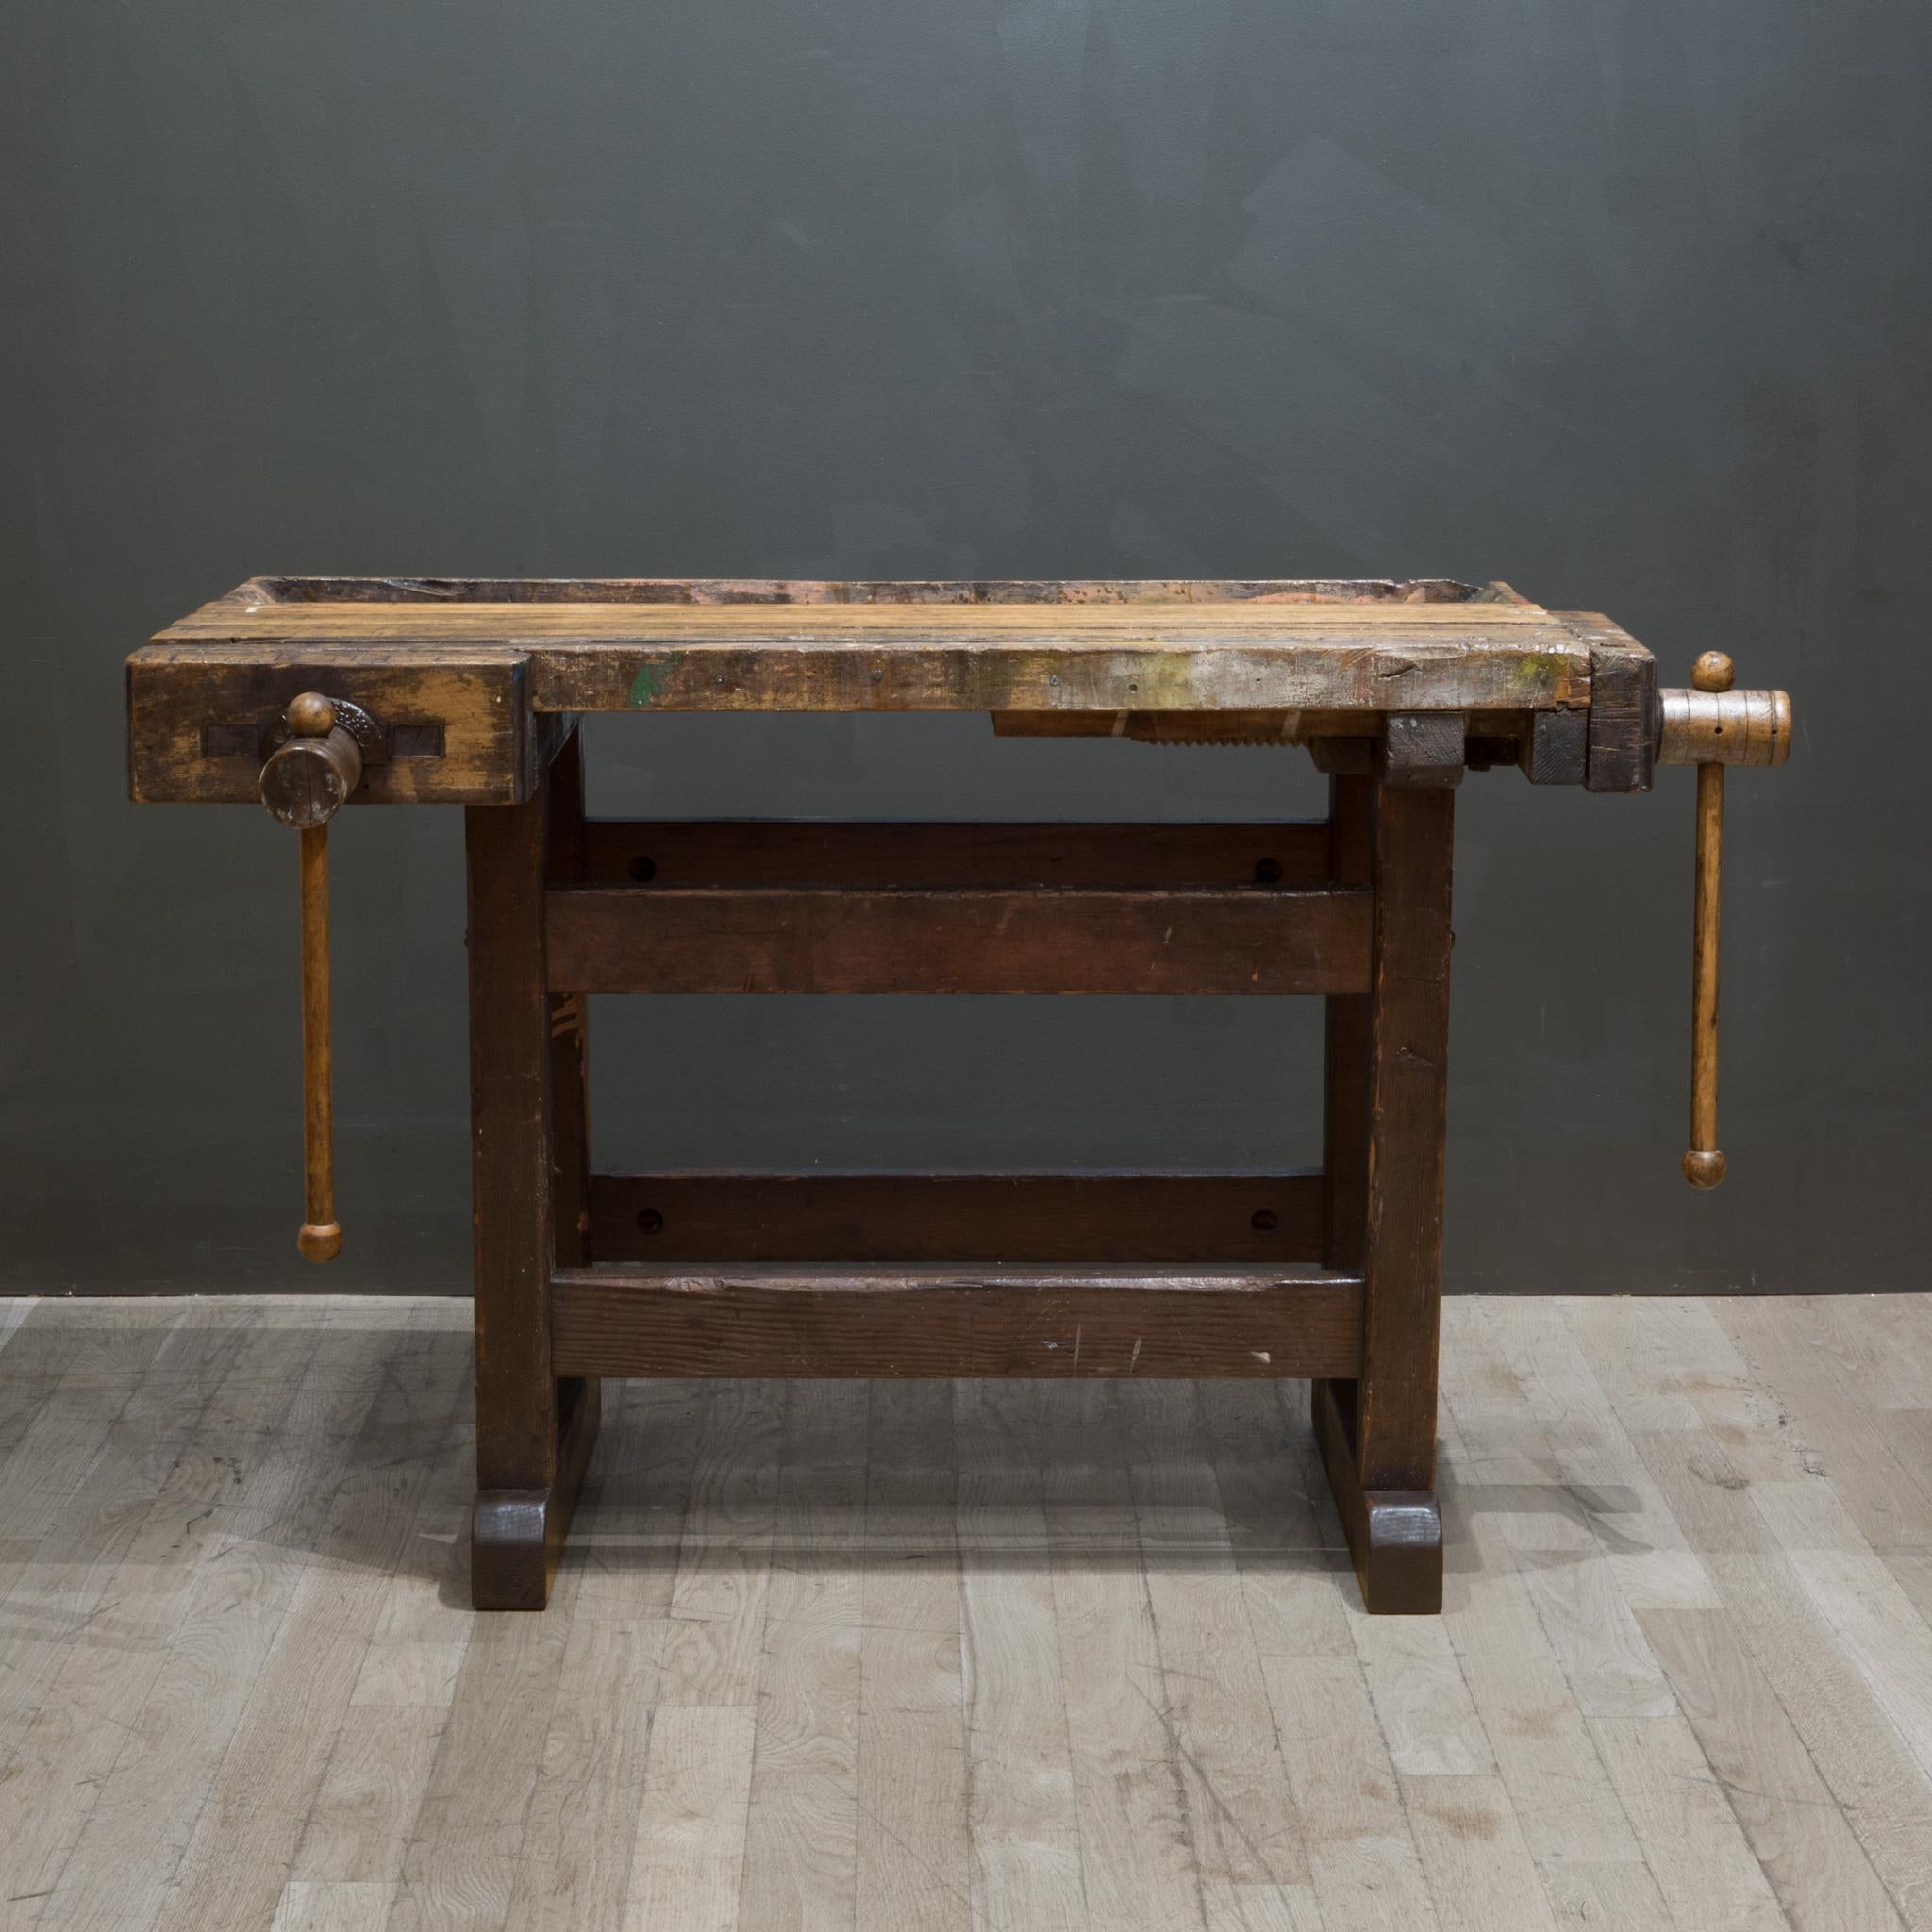 Rustic Antique 19th c. American Carpenter's Workbench c.1890-1900